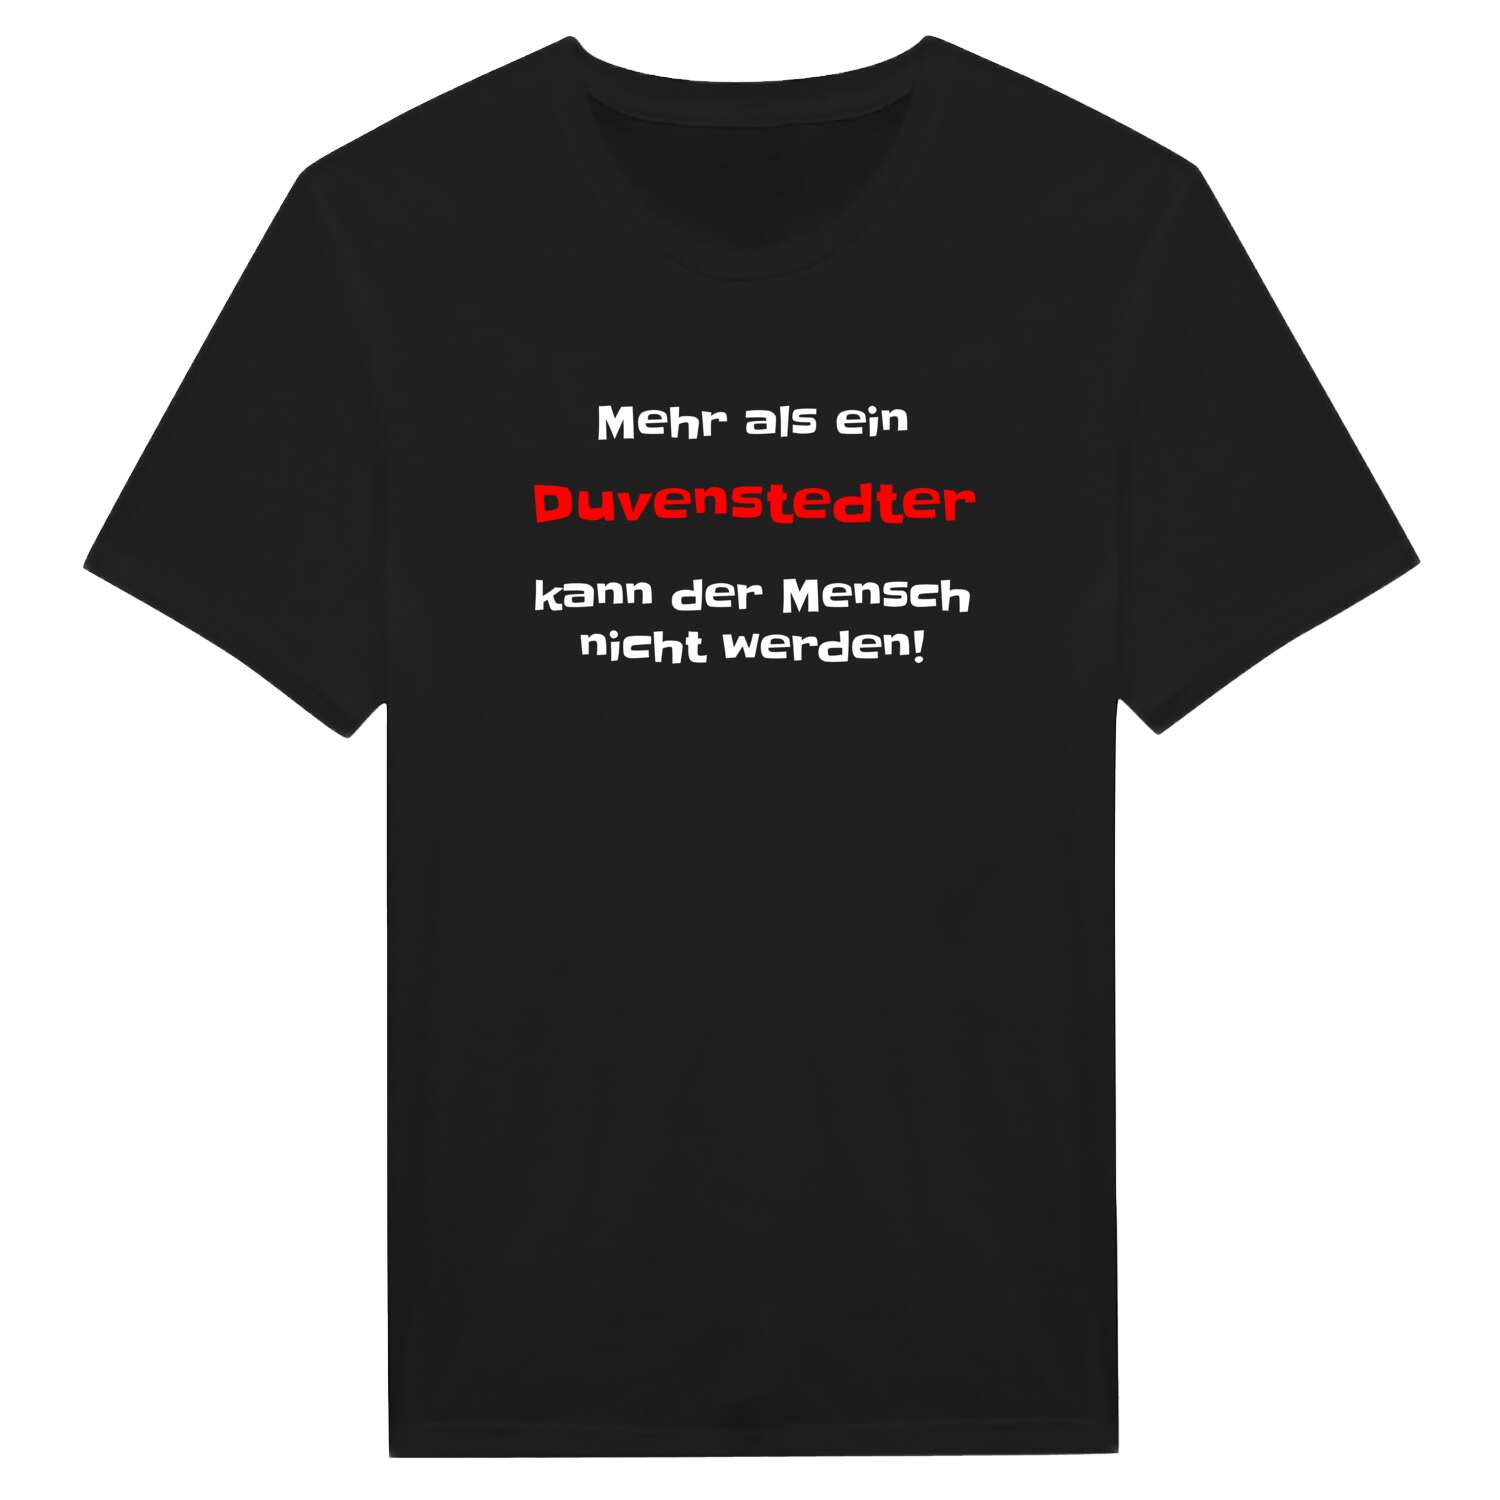 Duvenstedt T-Shirt »Mehr als ein«